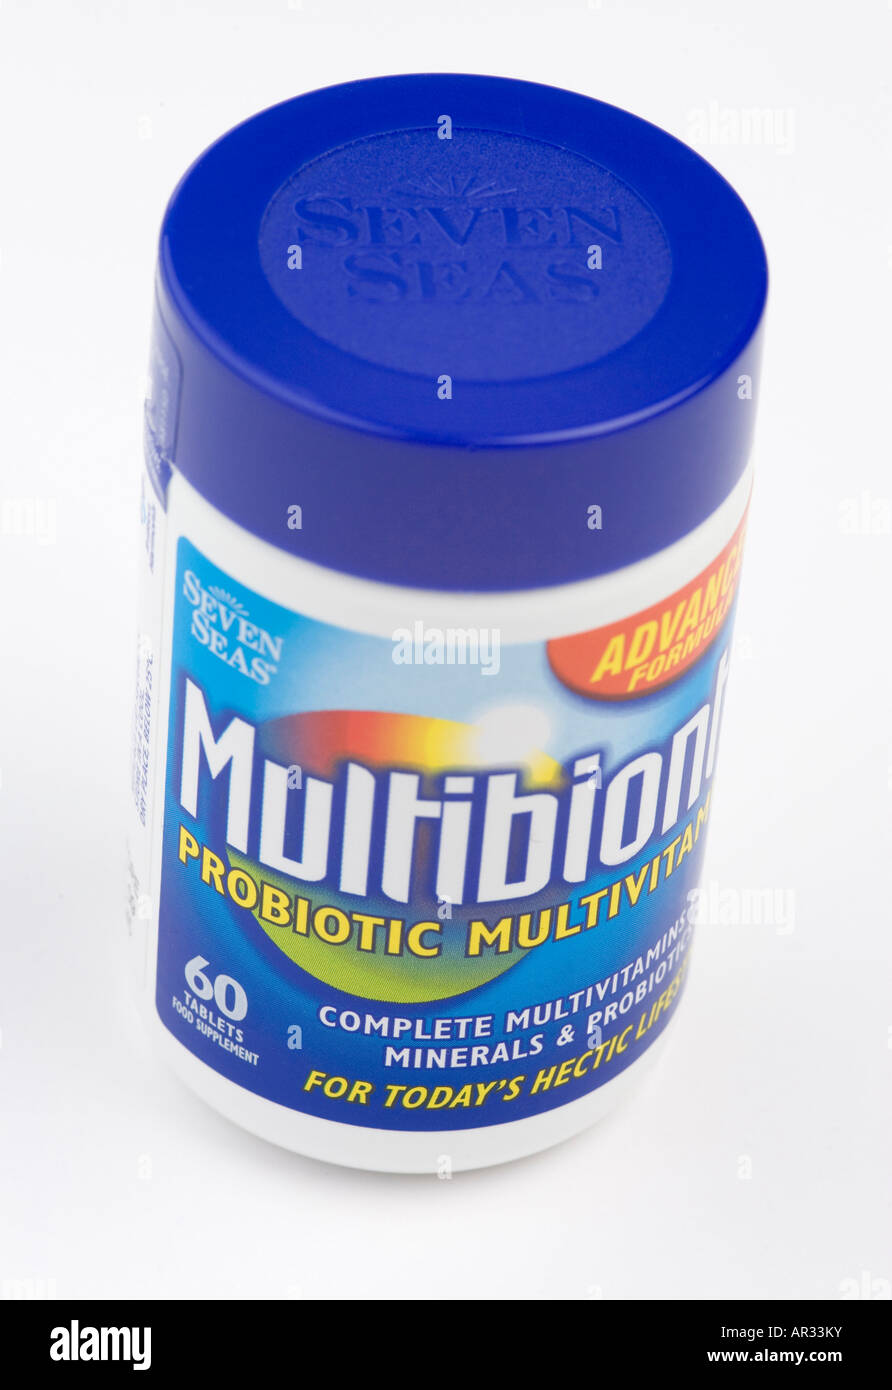 Multibionta probiotic multivitamin pills Stock Photo